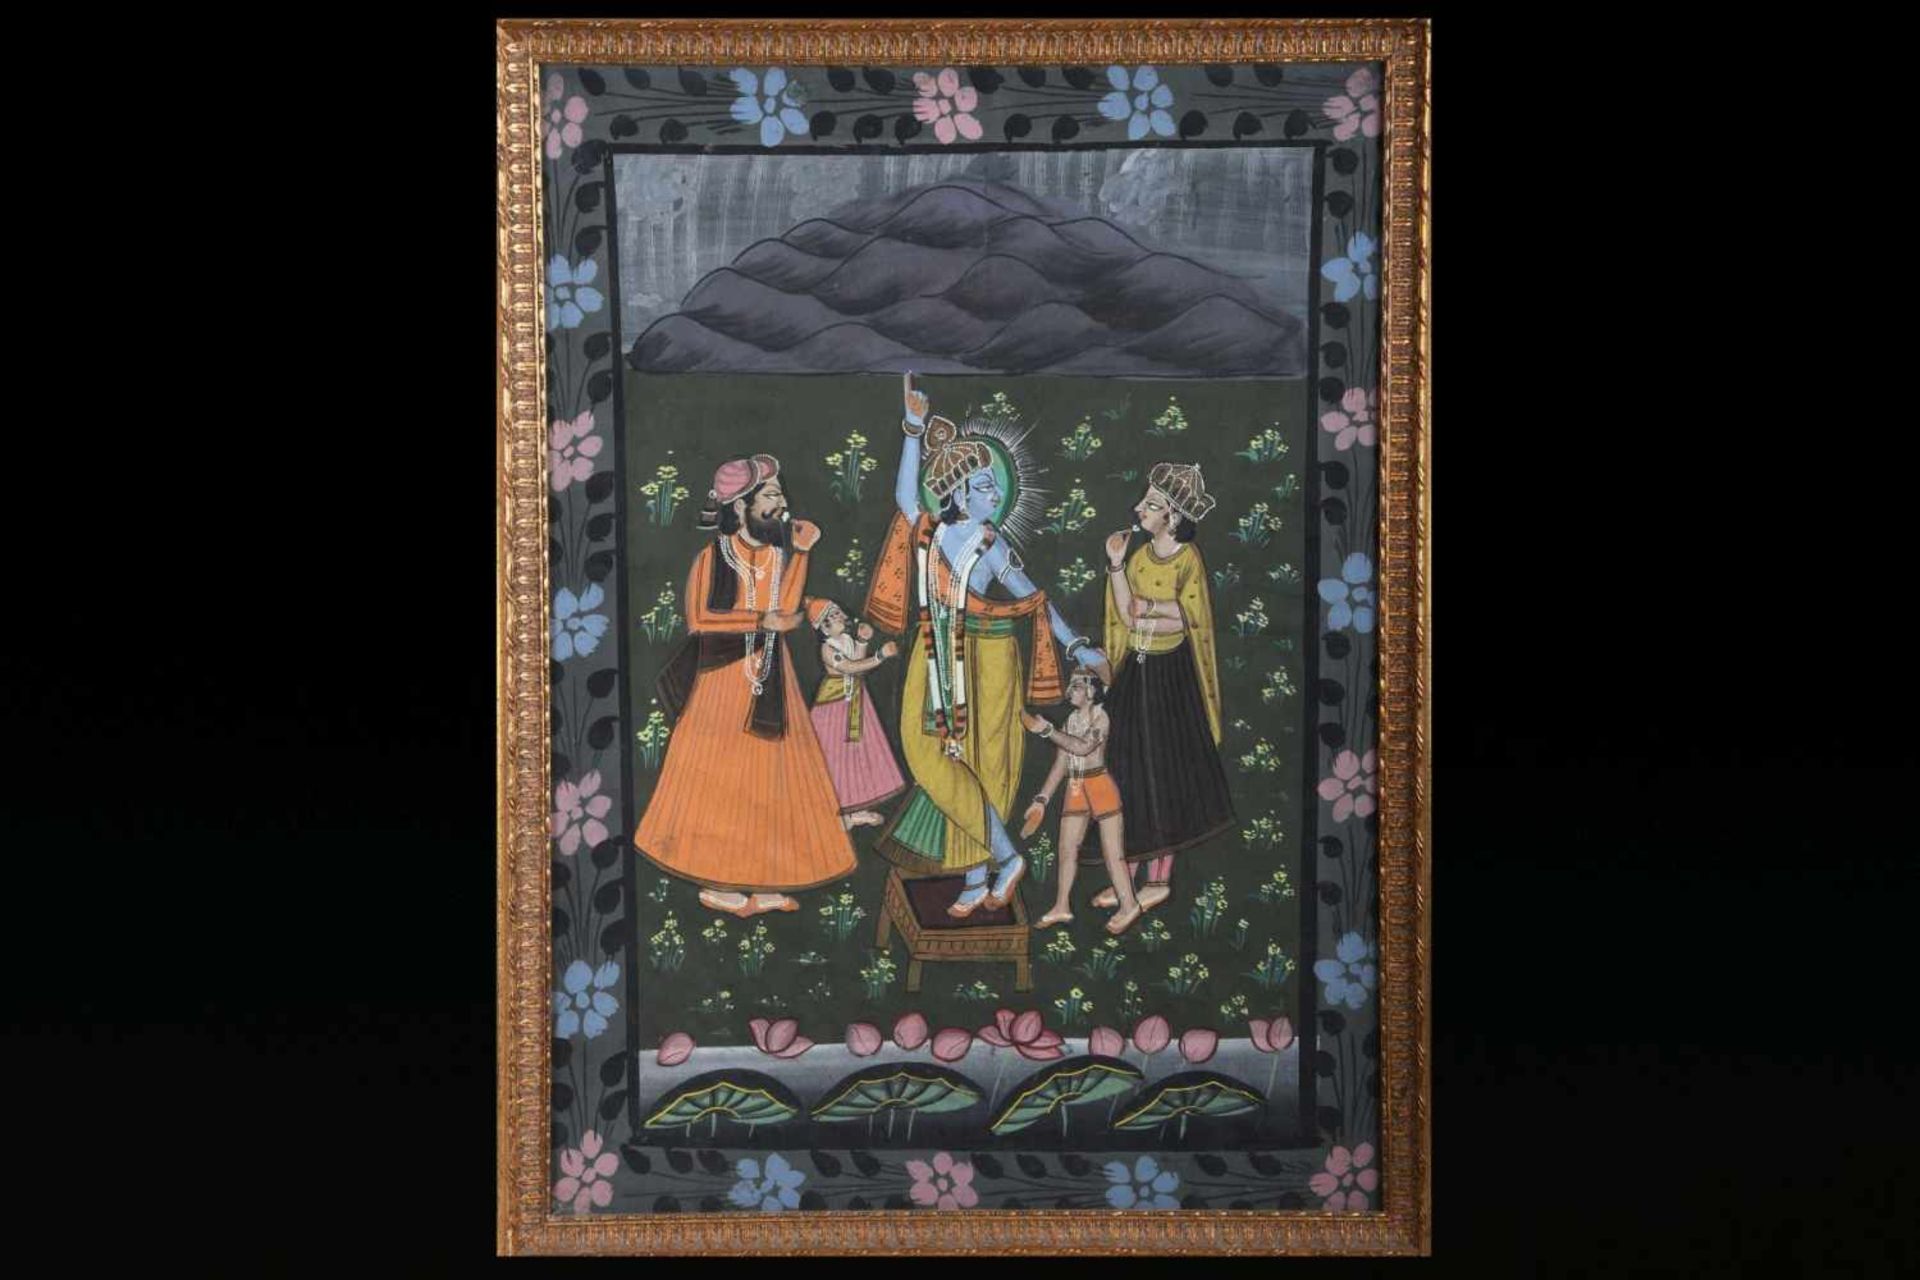 Rishi und Zuhörer, Nord-/MittelindienNn polychromen Naturfarben auf Papier gemalte Darstellung,